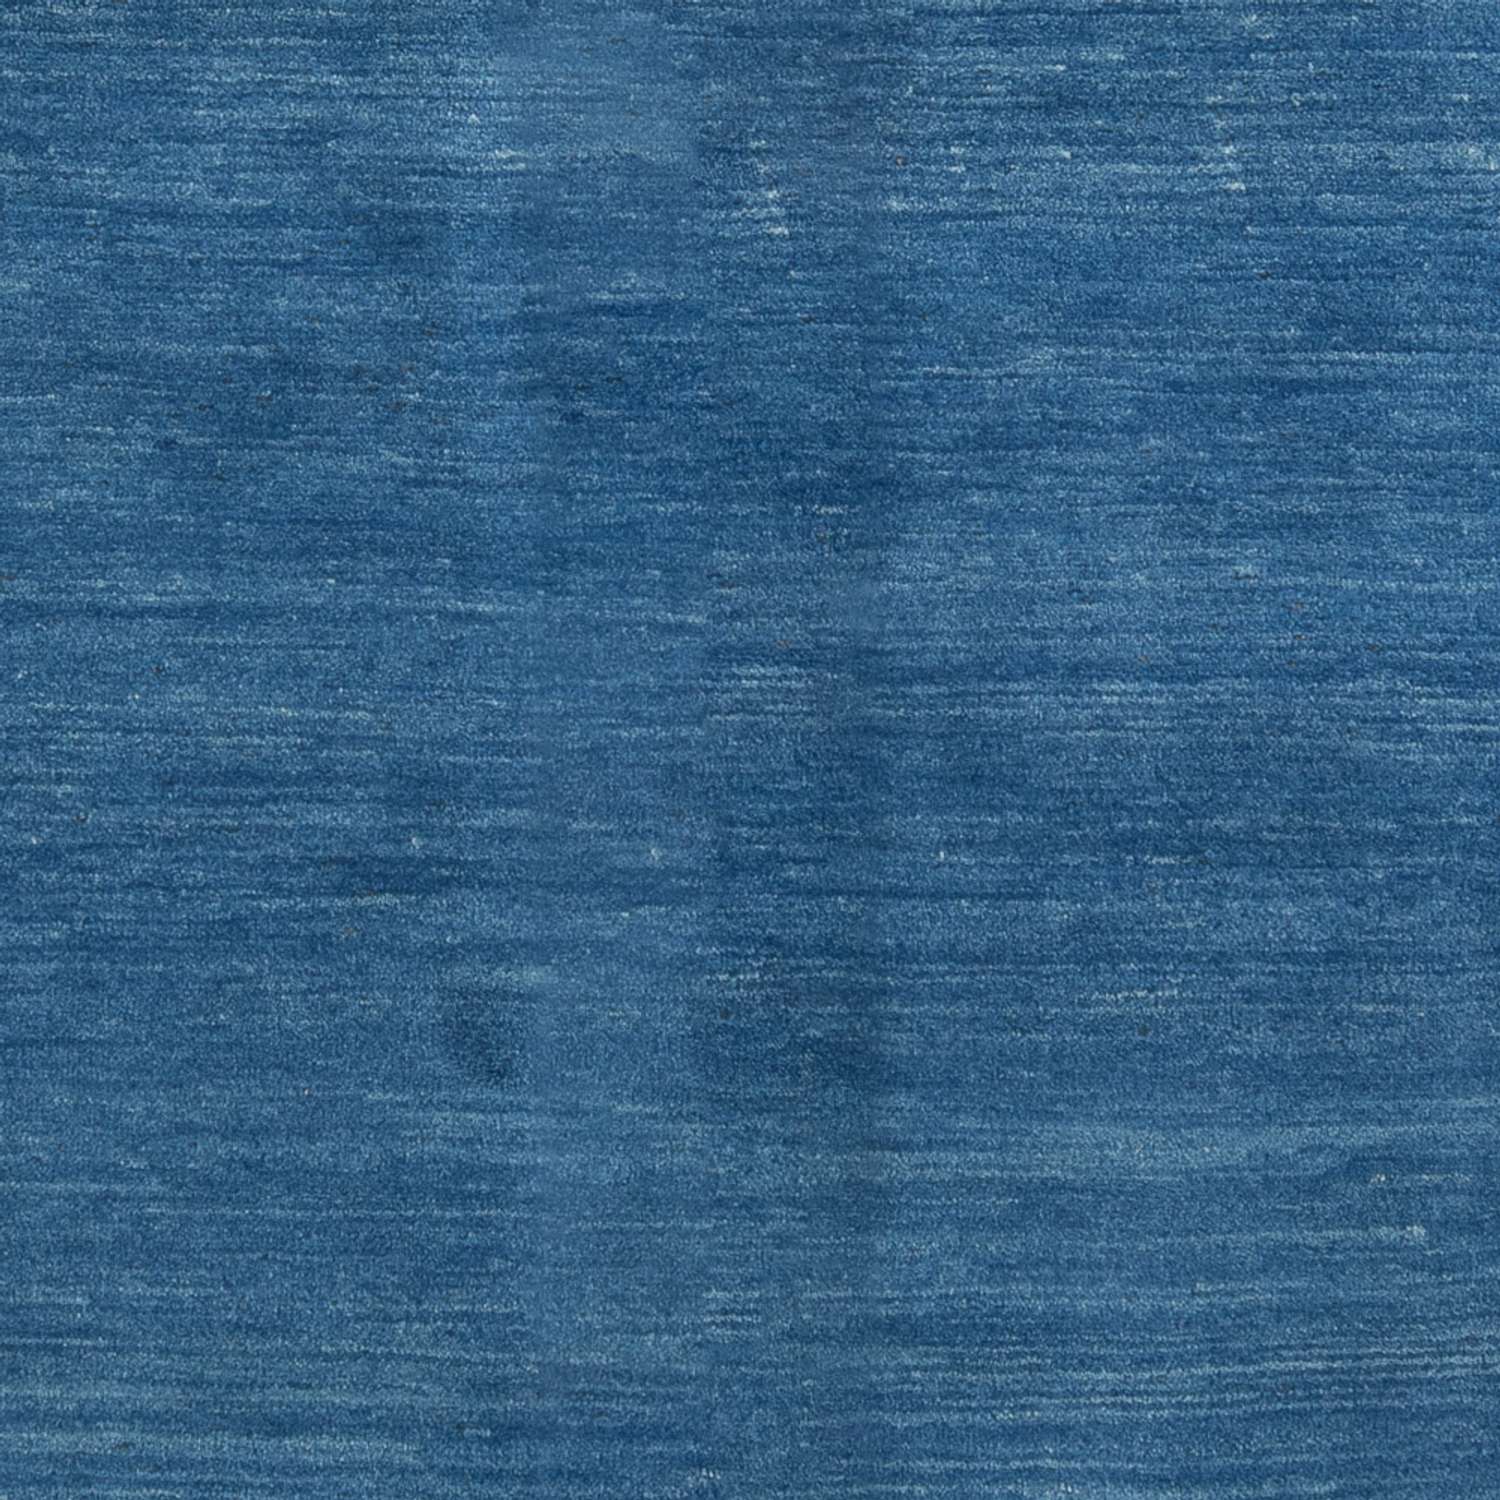 Gabbeh-matta - persisk - 252 x 170 cm - havsblått